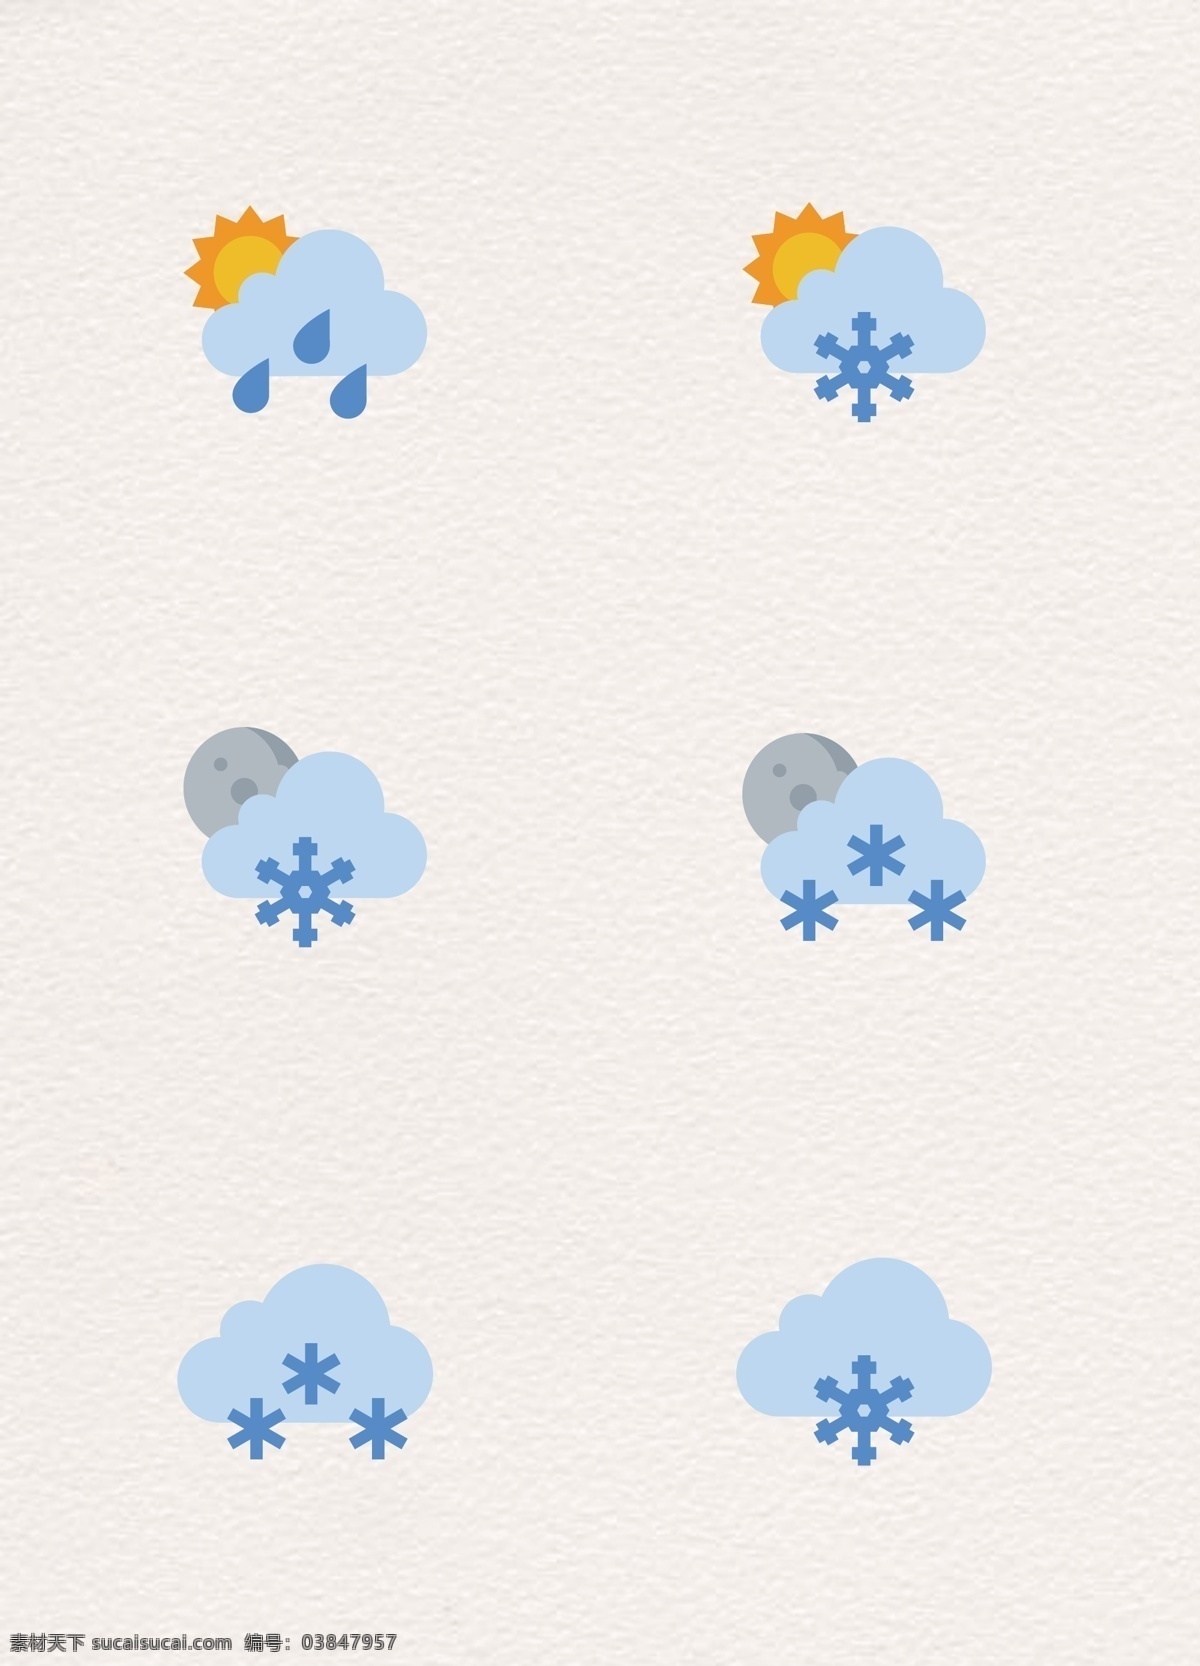 可爱 卡通 天气 气候 图标 元素 矢量图 扁平化设计 天气图标 晴转多云 下雪天